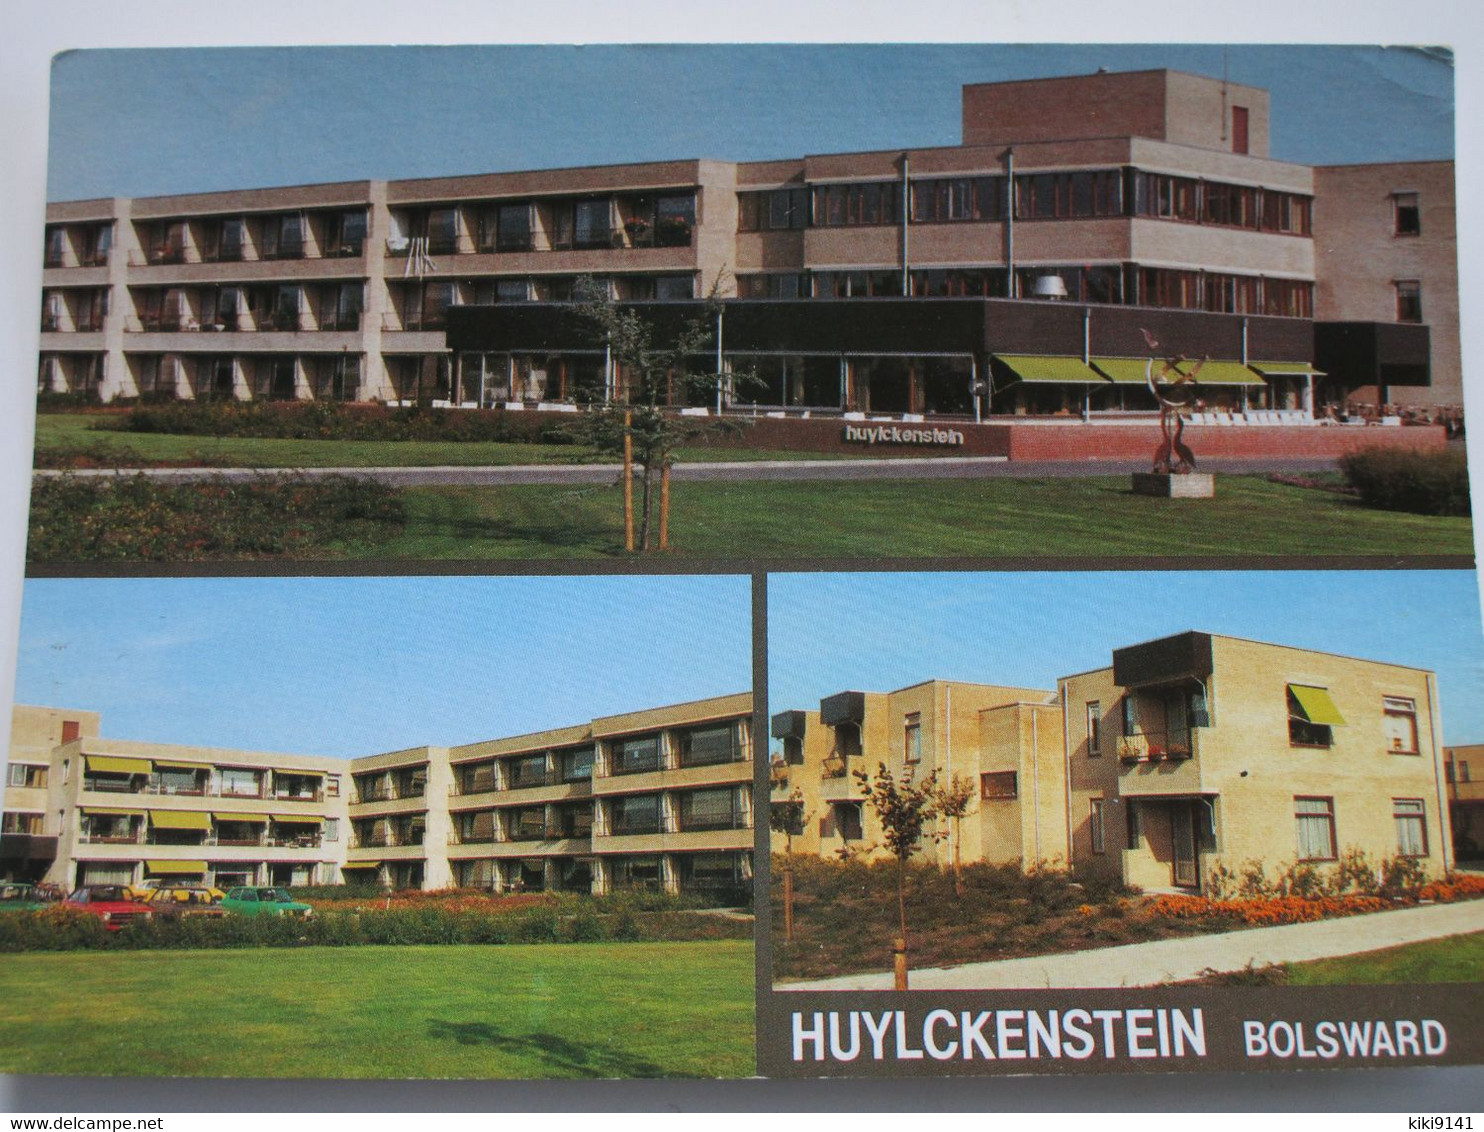 HUYLCKENSTEIN - Bolsward